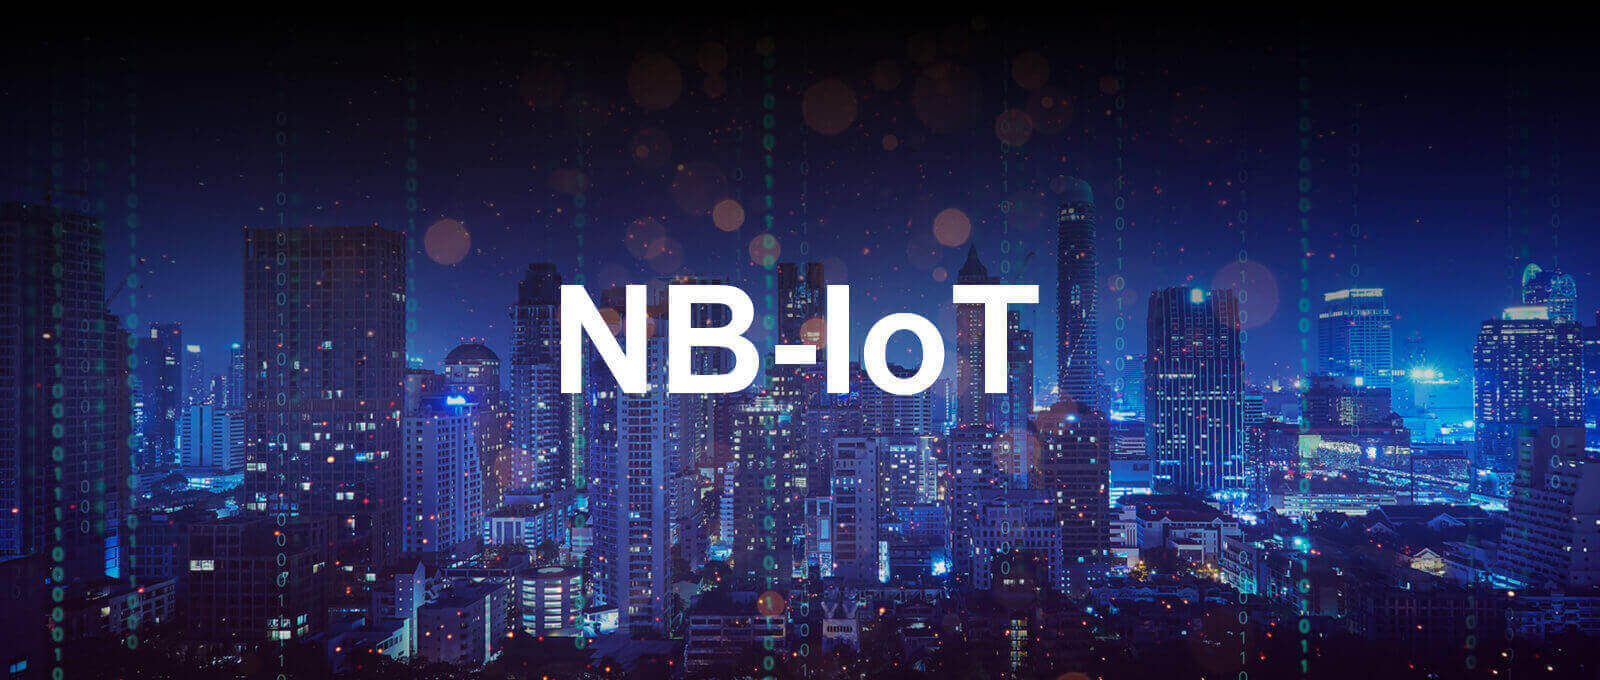 La tecnologia NB-IoT per i tuoi dispositivi connessi